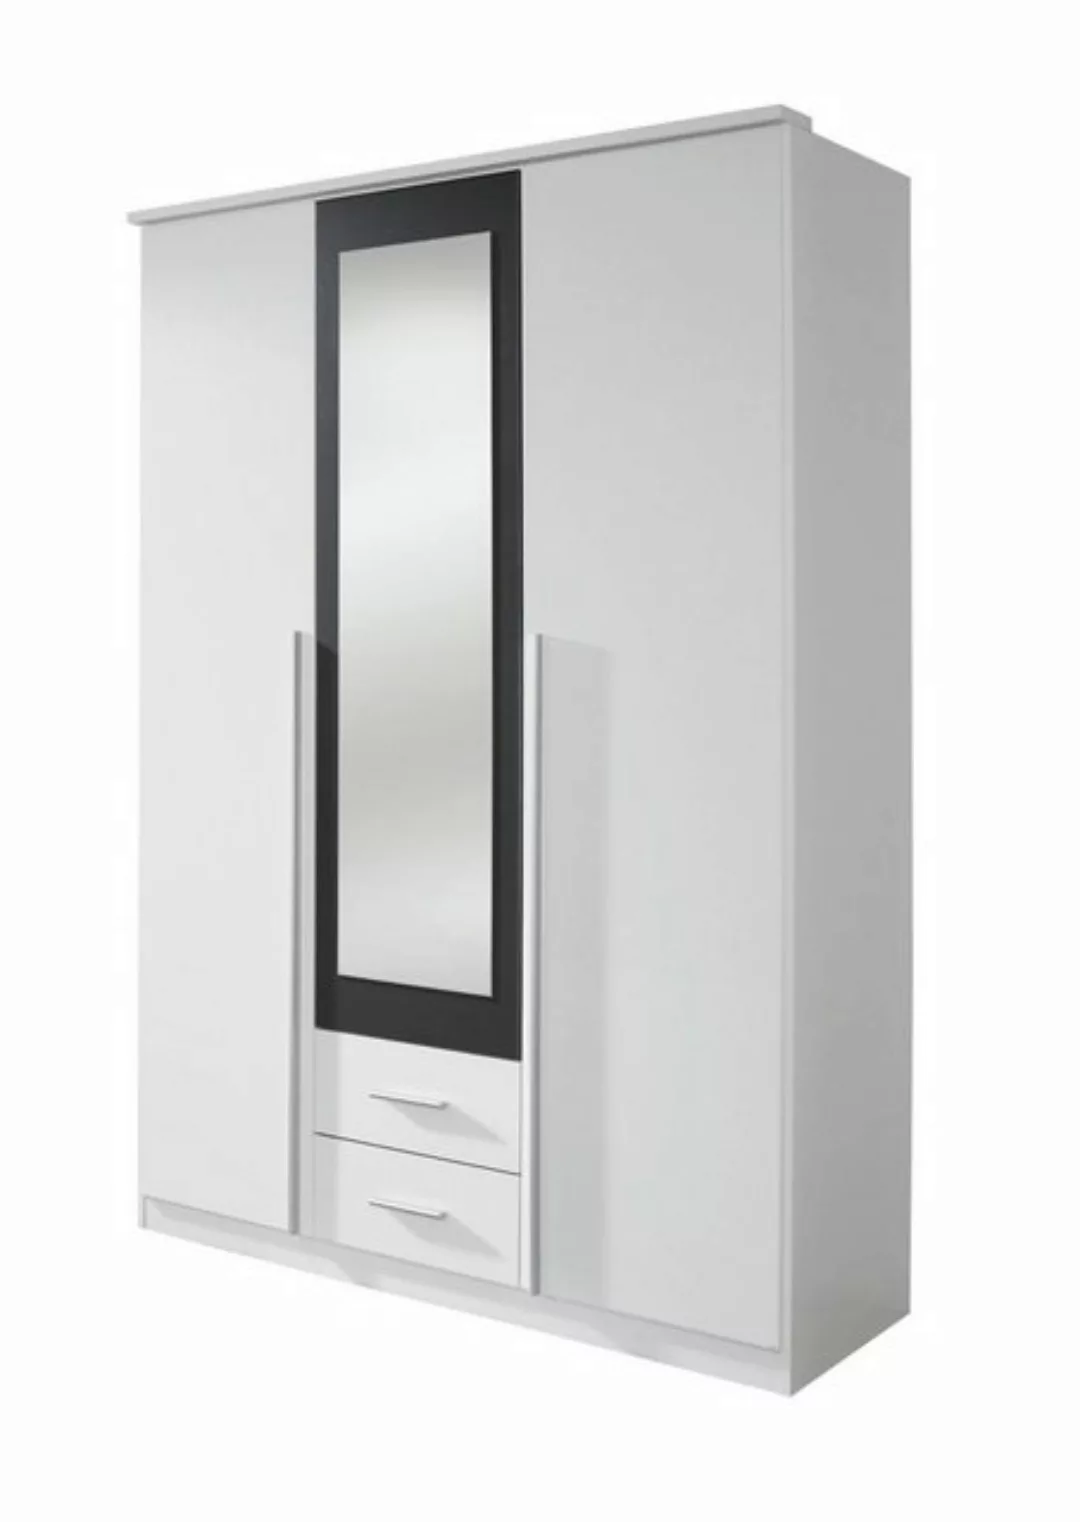 Kindermöbel 24 Schranksystem Basti weiß - grau- metallic 3 Türen günstig online kaufen